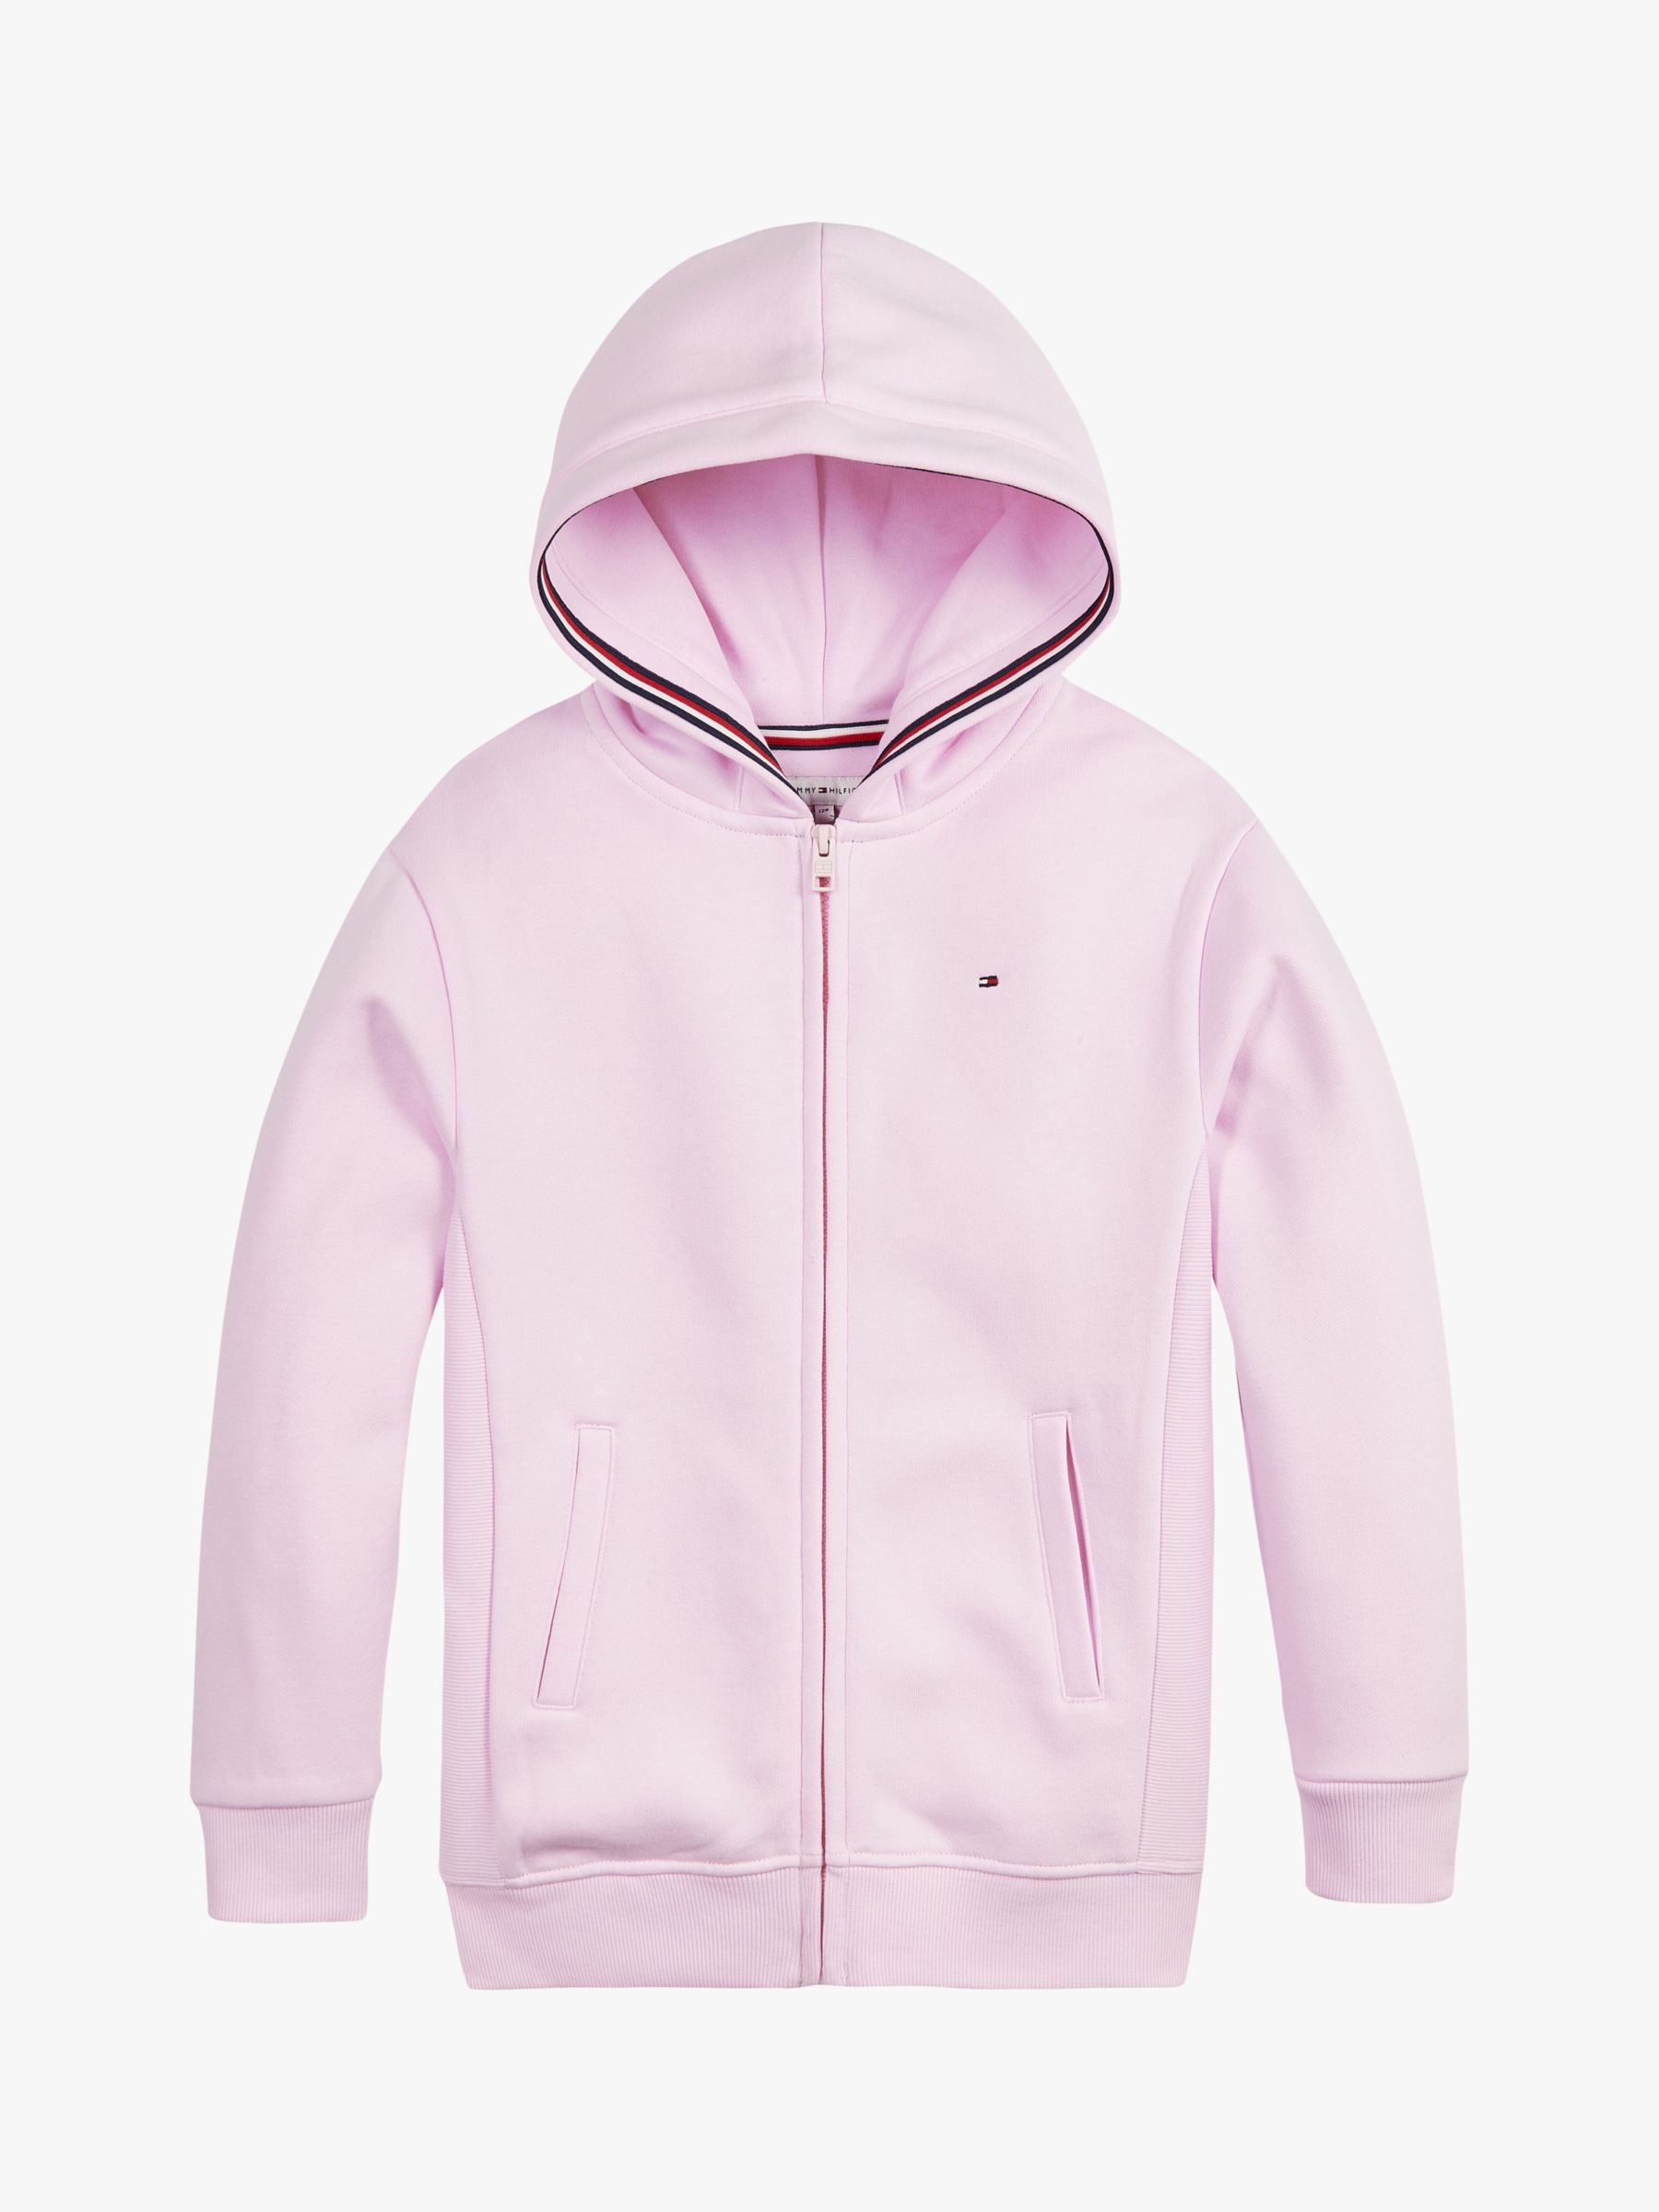 tommy hilfiger pink zip up hoodie